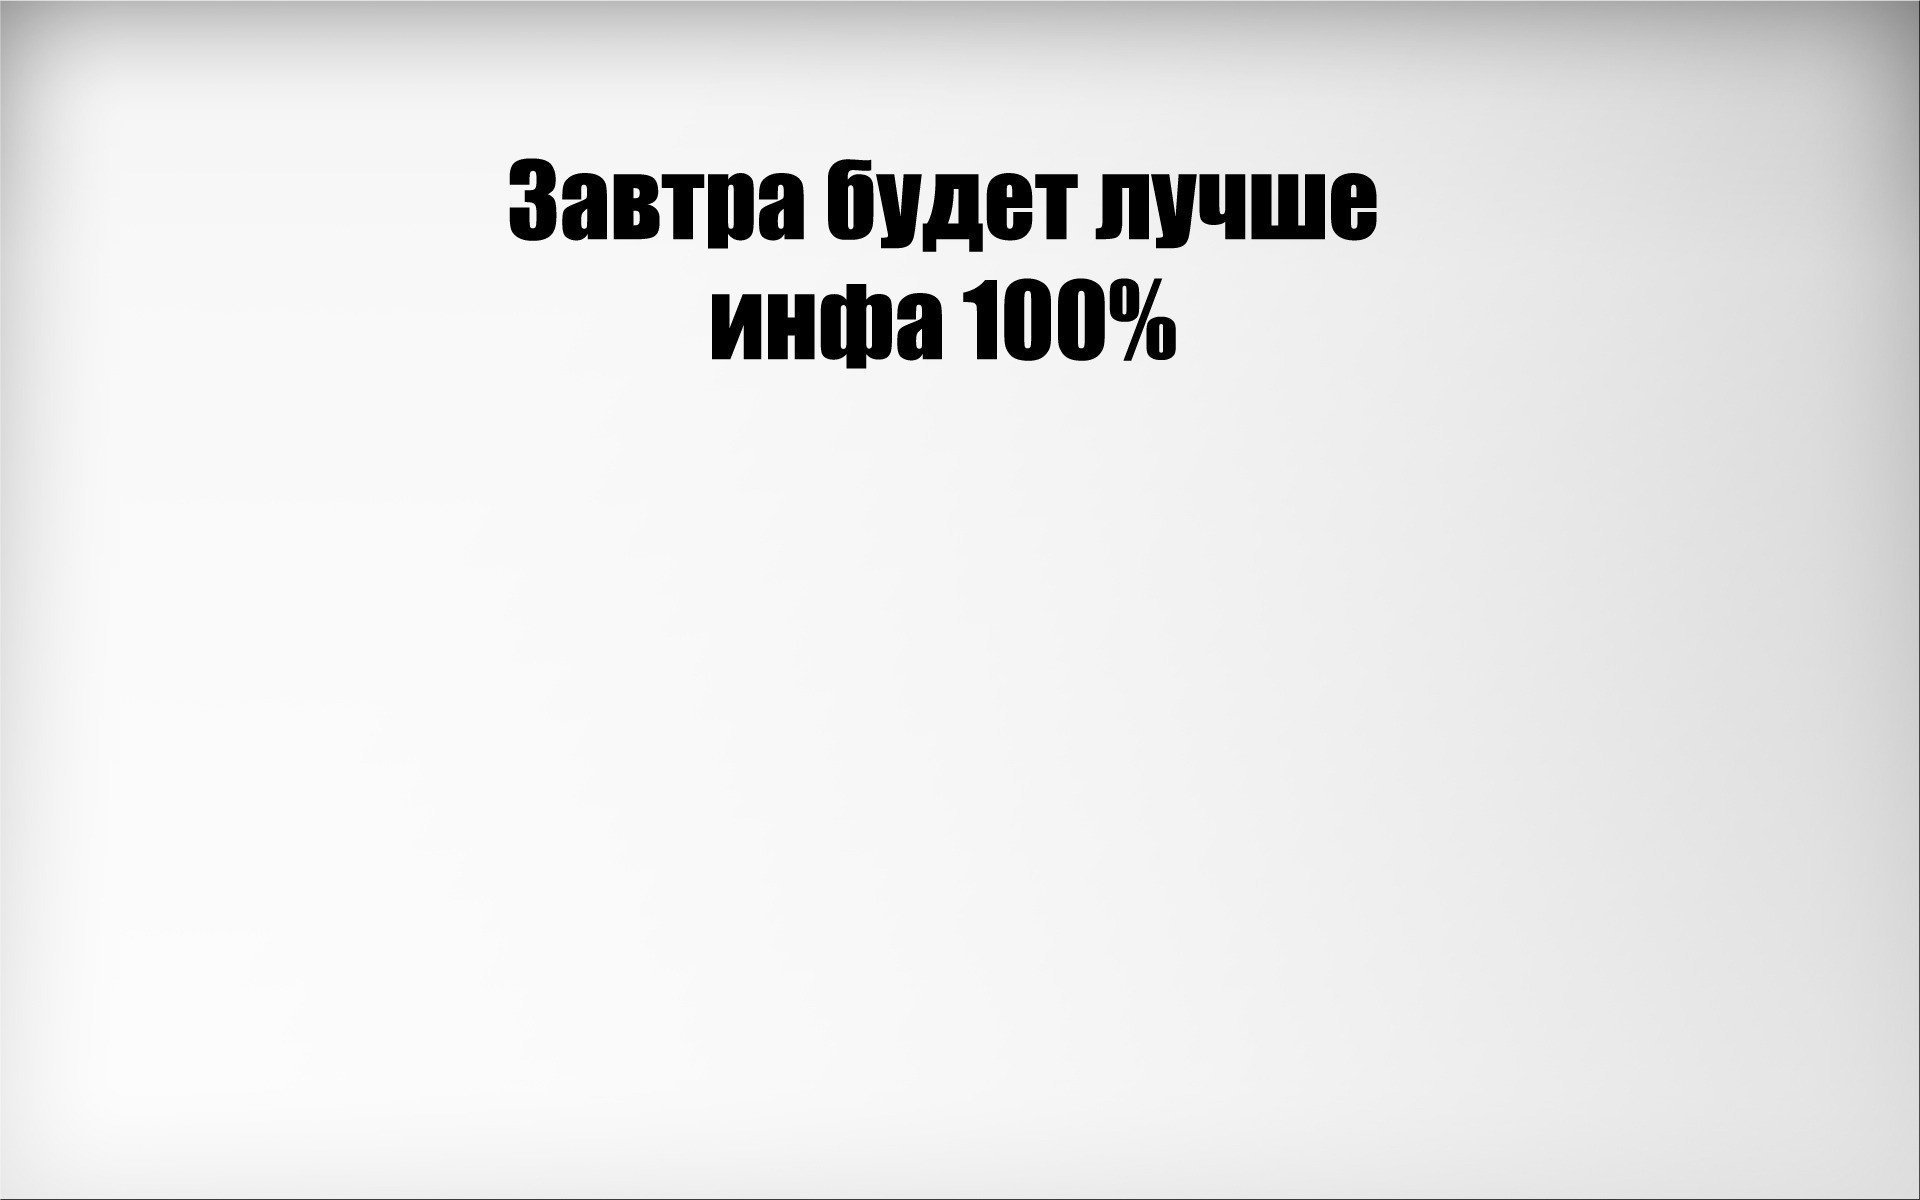 Обои со смешными надписями на русском языке фото